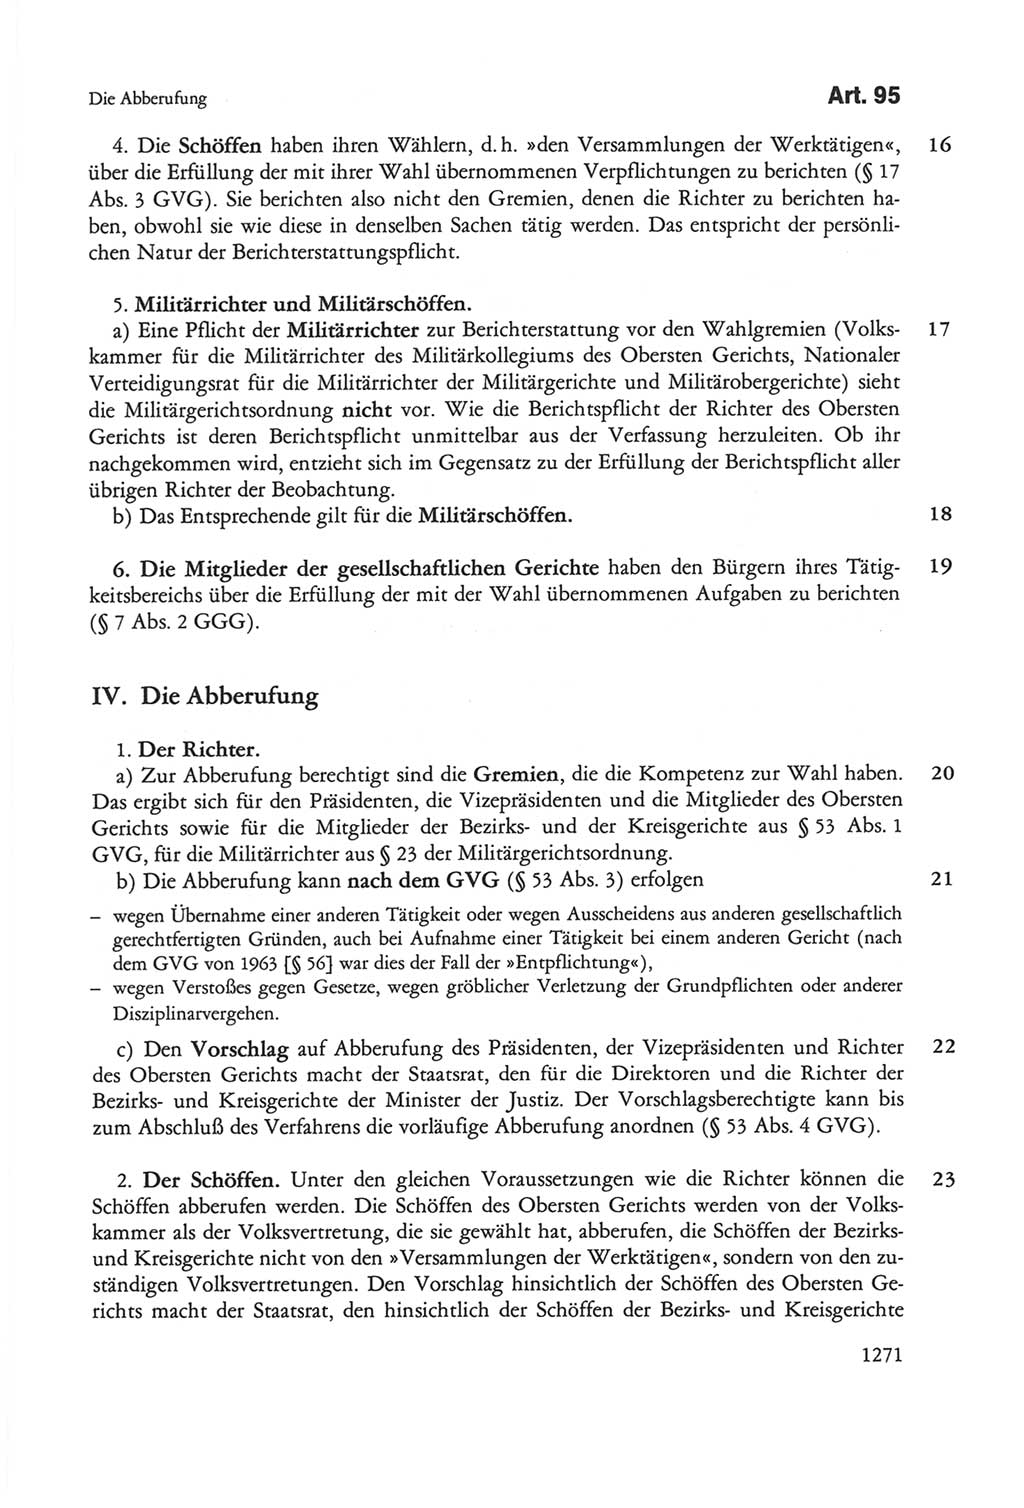 Die sozialistische Verfassung der Deutschen Demokratischen Republik (DDR), Kommentar 1982, Seite 1271 (Soz. Verf. DDR Komm. 1982, S. 1271)